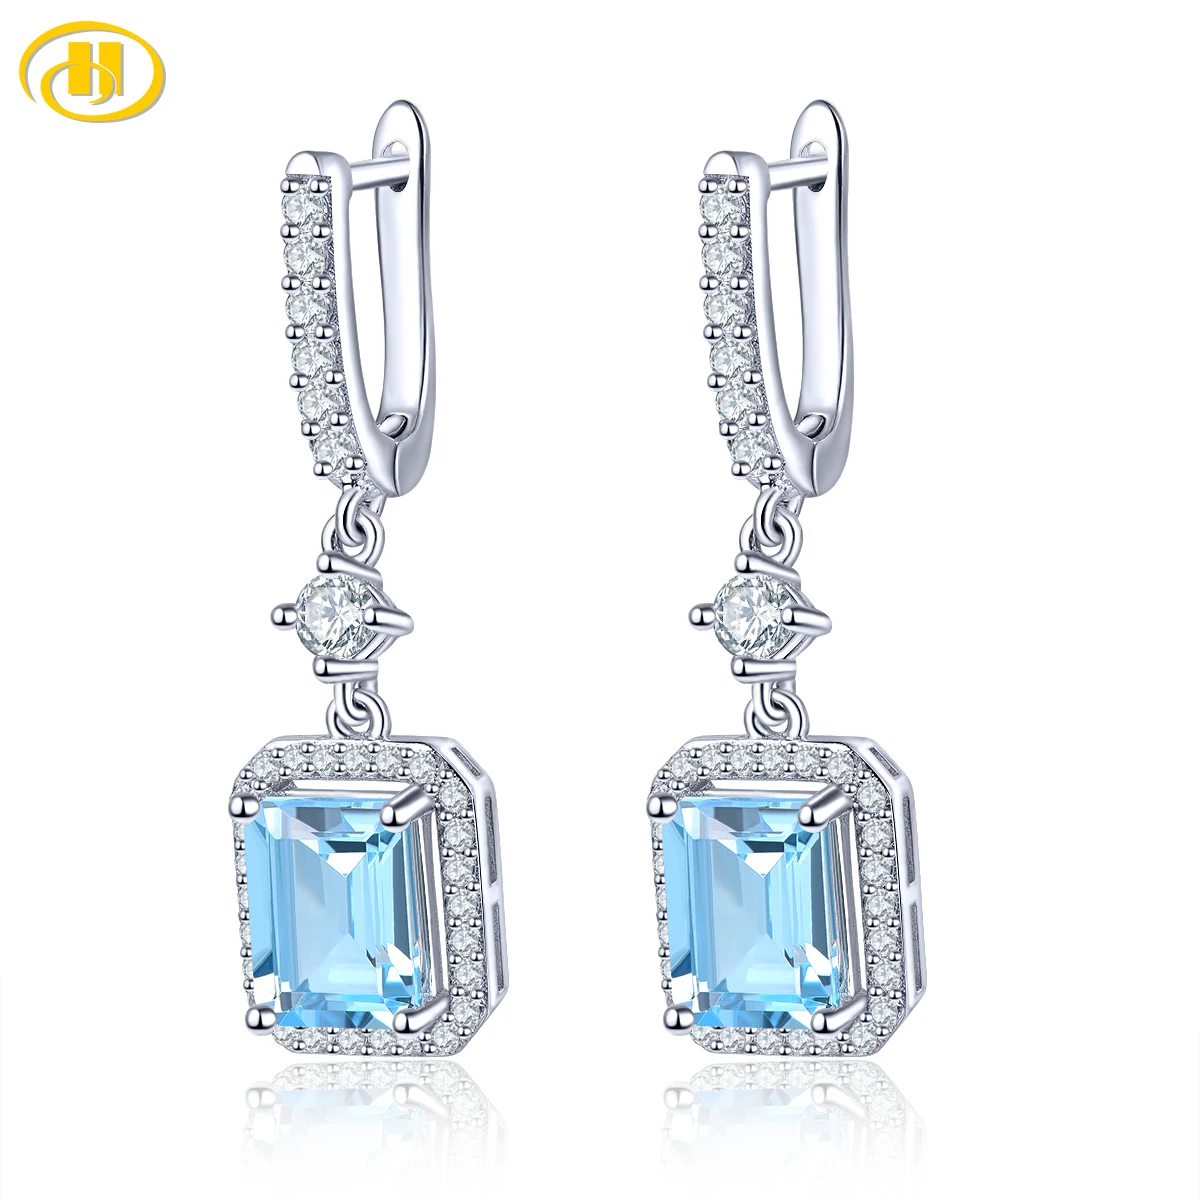  blue topaz sterling silver drop earring for women 5 2 carats sky blue geniune gemstone thumb200